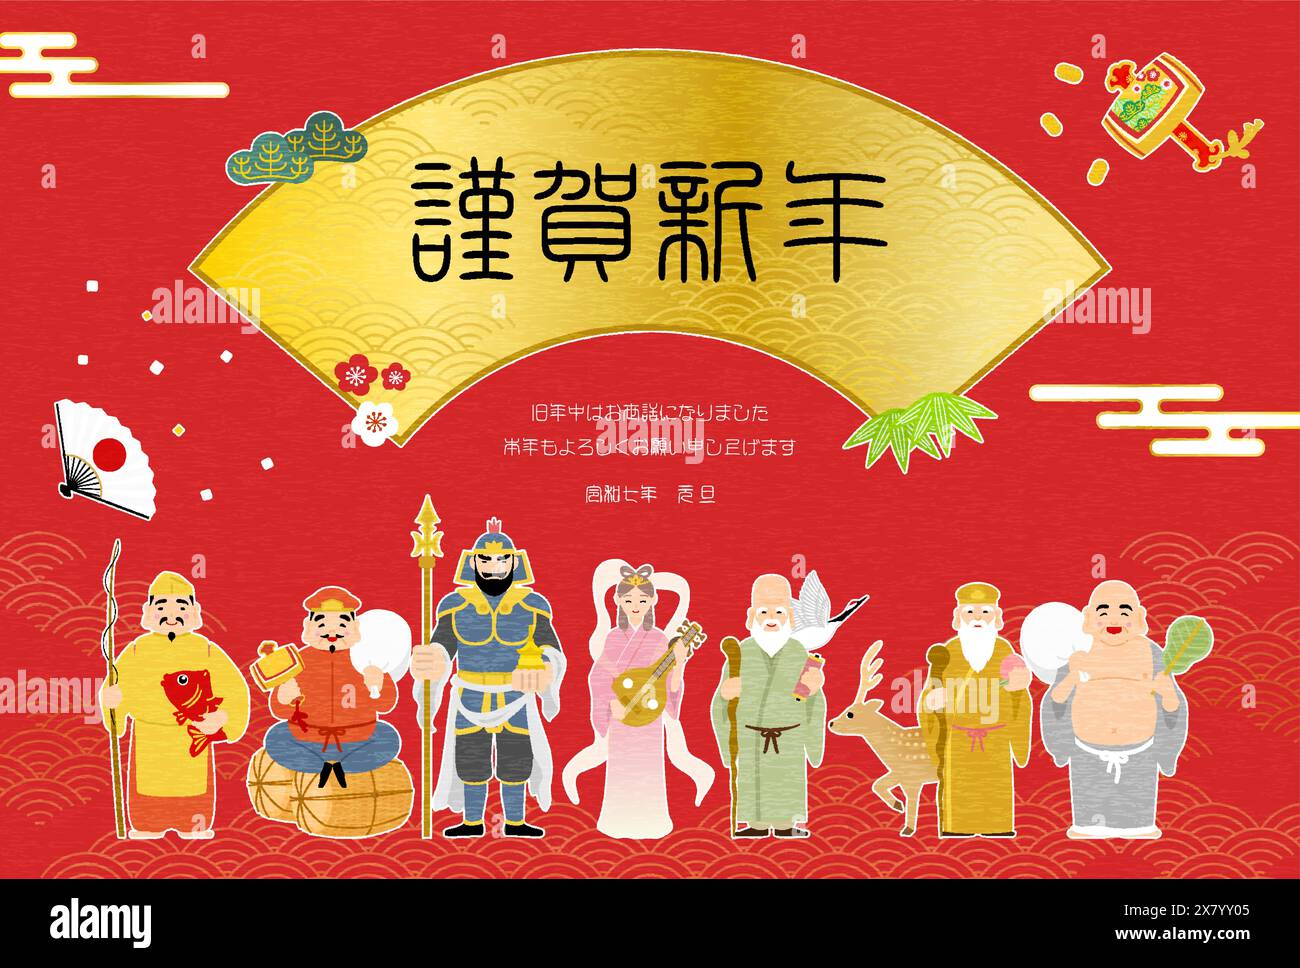 Japanische Neujahrsgrußkarte für das Jahr der Schlange, 2025, Sieben Glücksgötter und japanischer Hintergrund Blue Sea Waves - Übersetzung: Happy New YE Stock Vektor